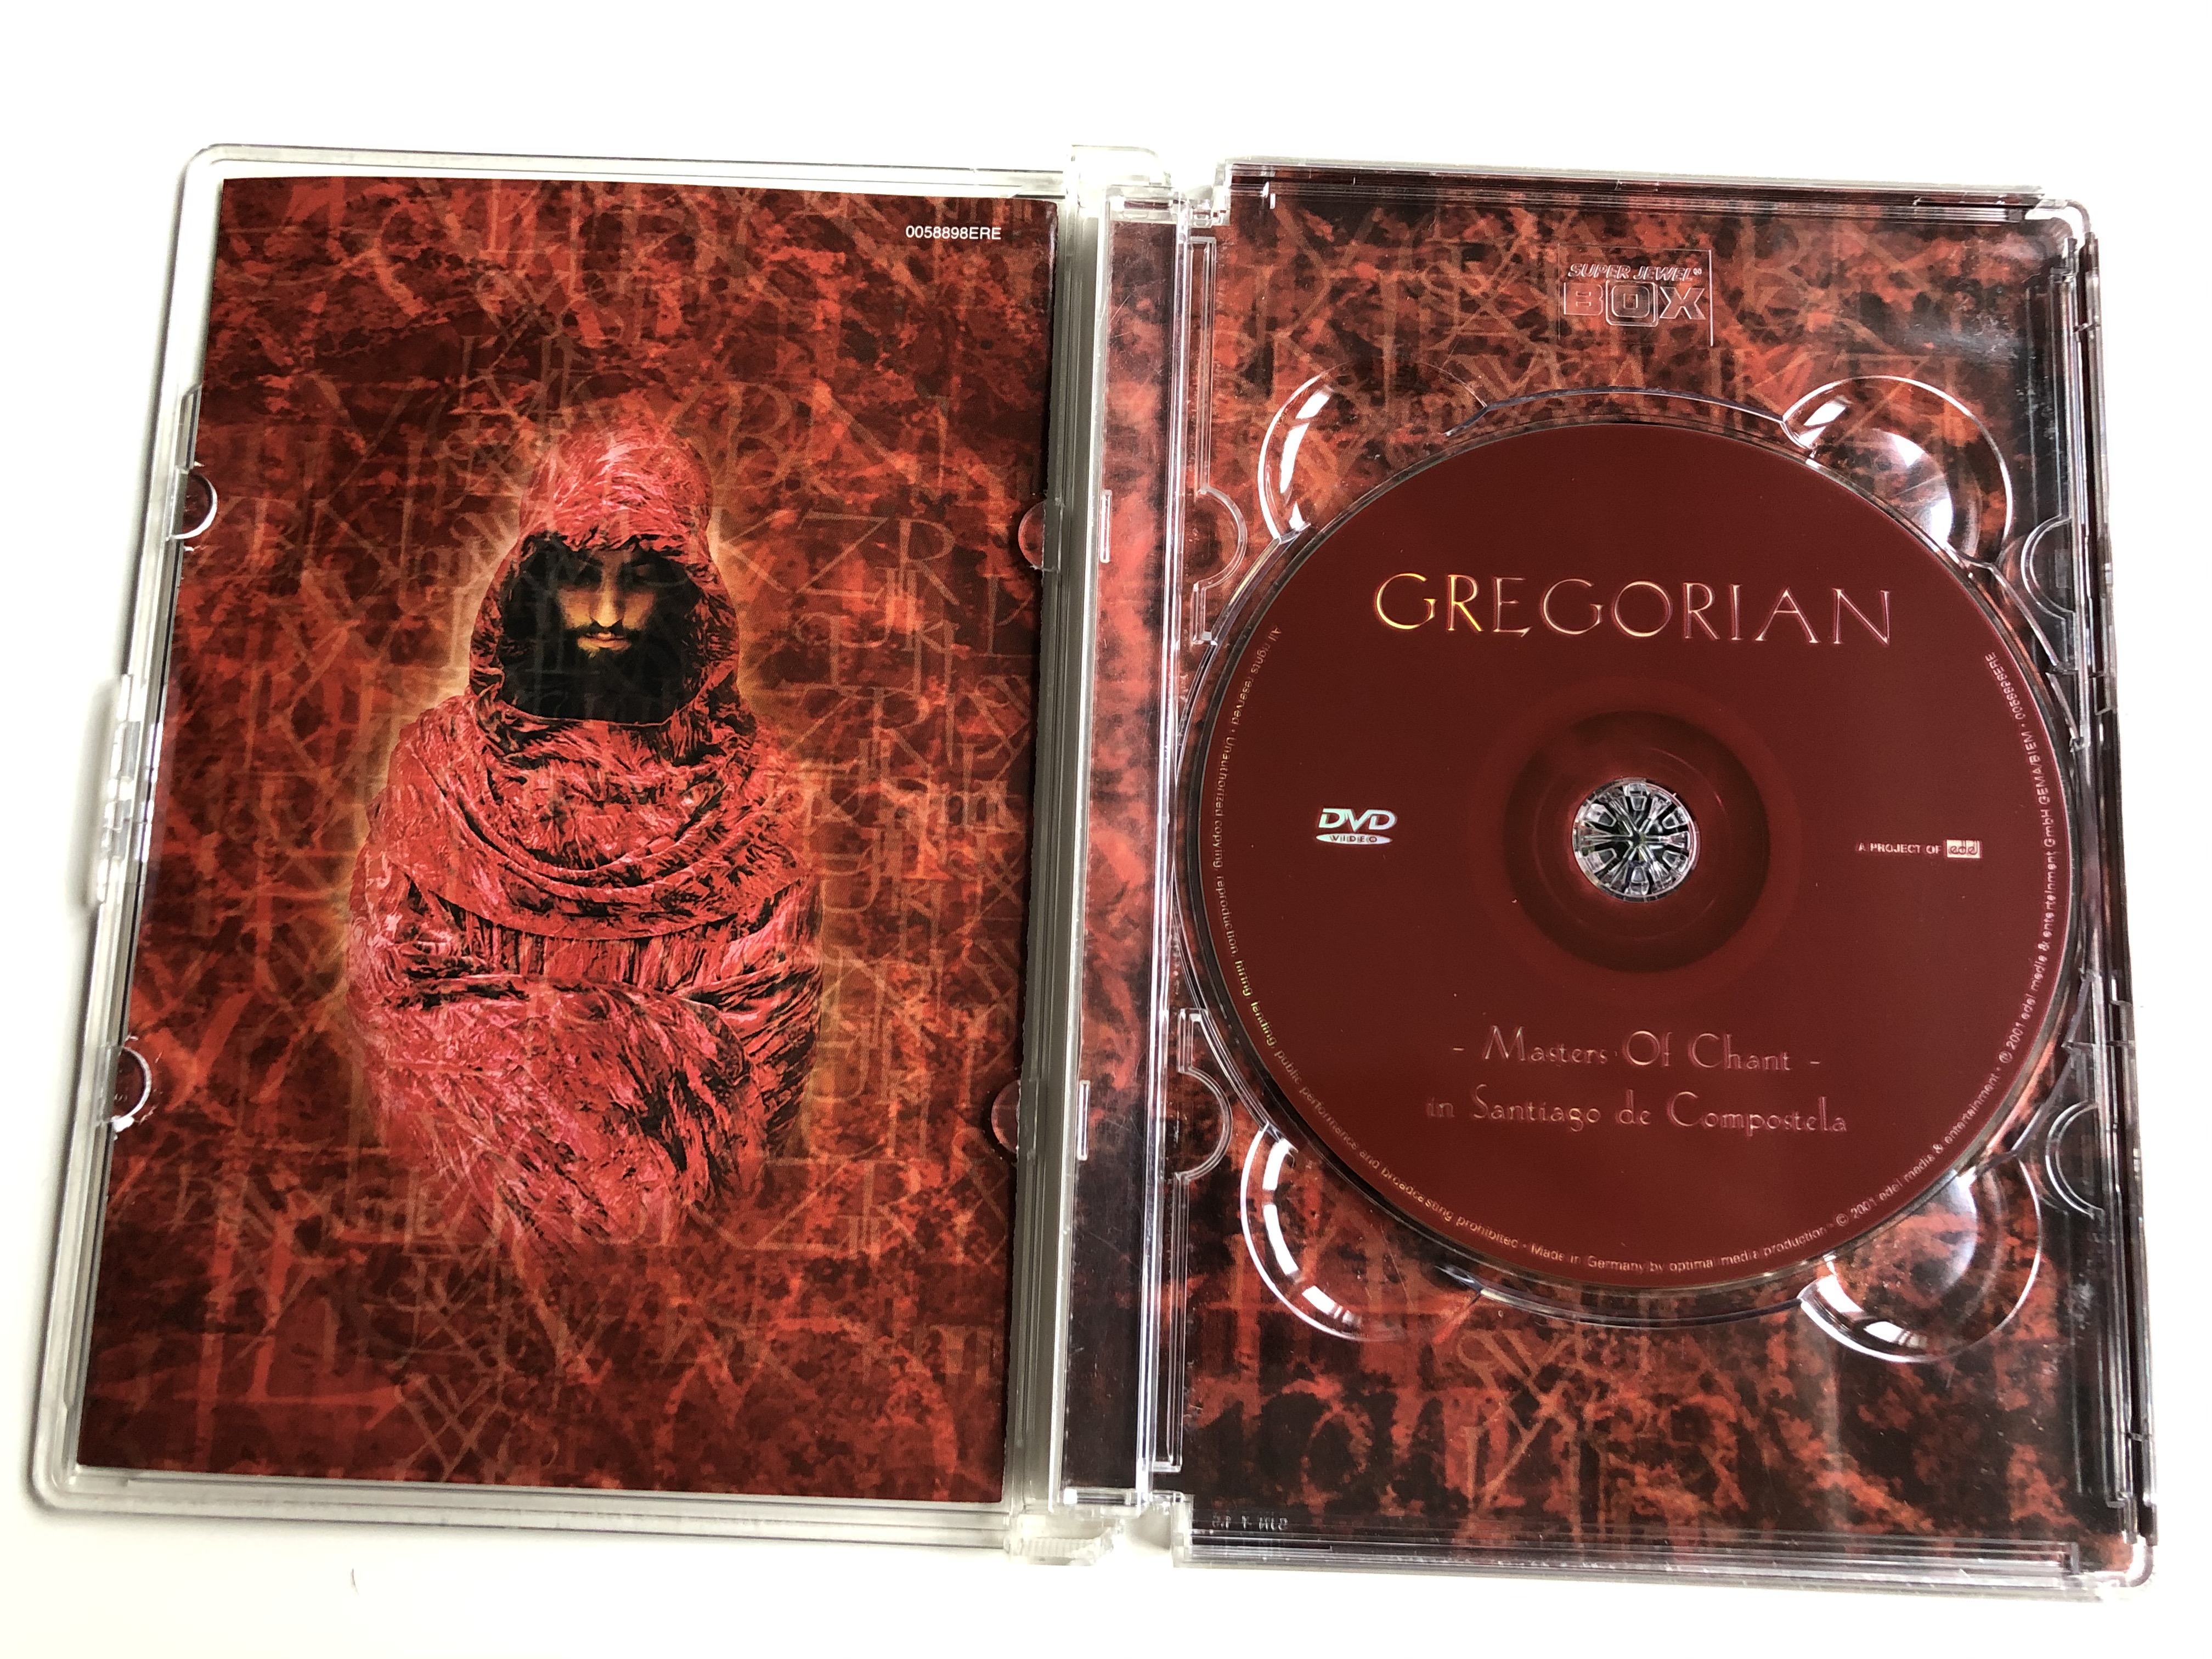 Gregorian - Masters of Chant DVD 2001 in Santiago de Compostela / Gregorian  versions of popular songs / Edel records - bibleinmylanguage